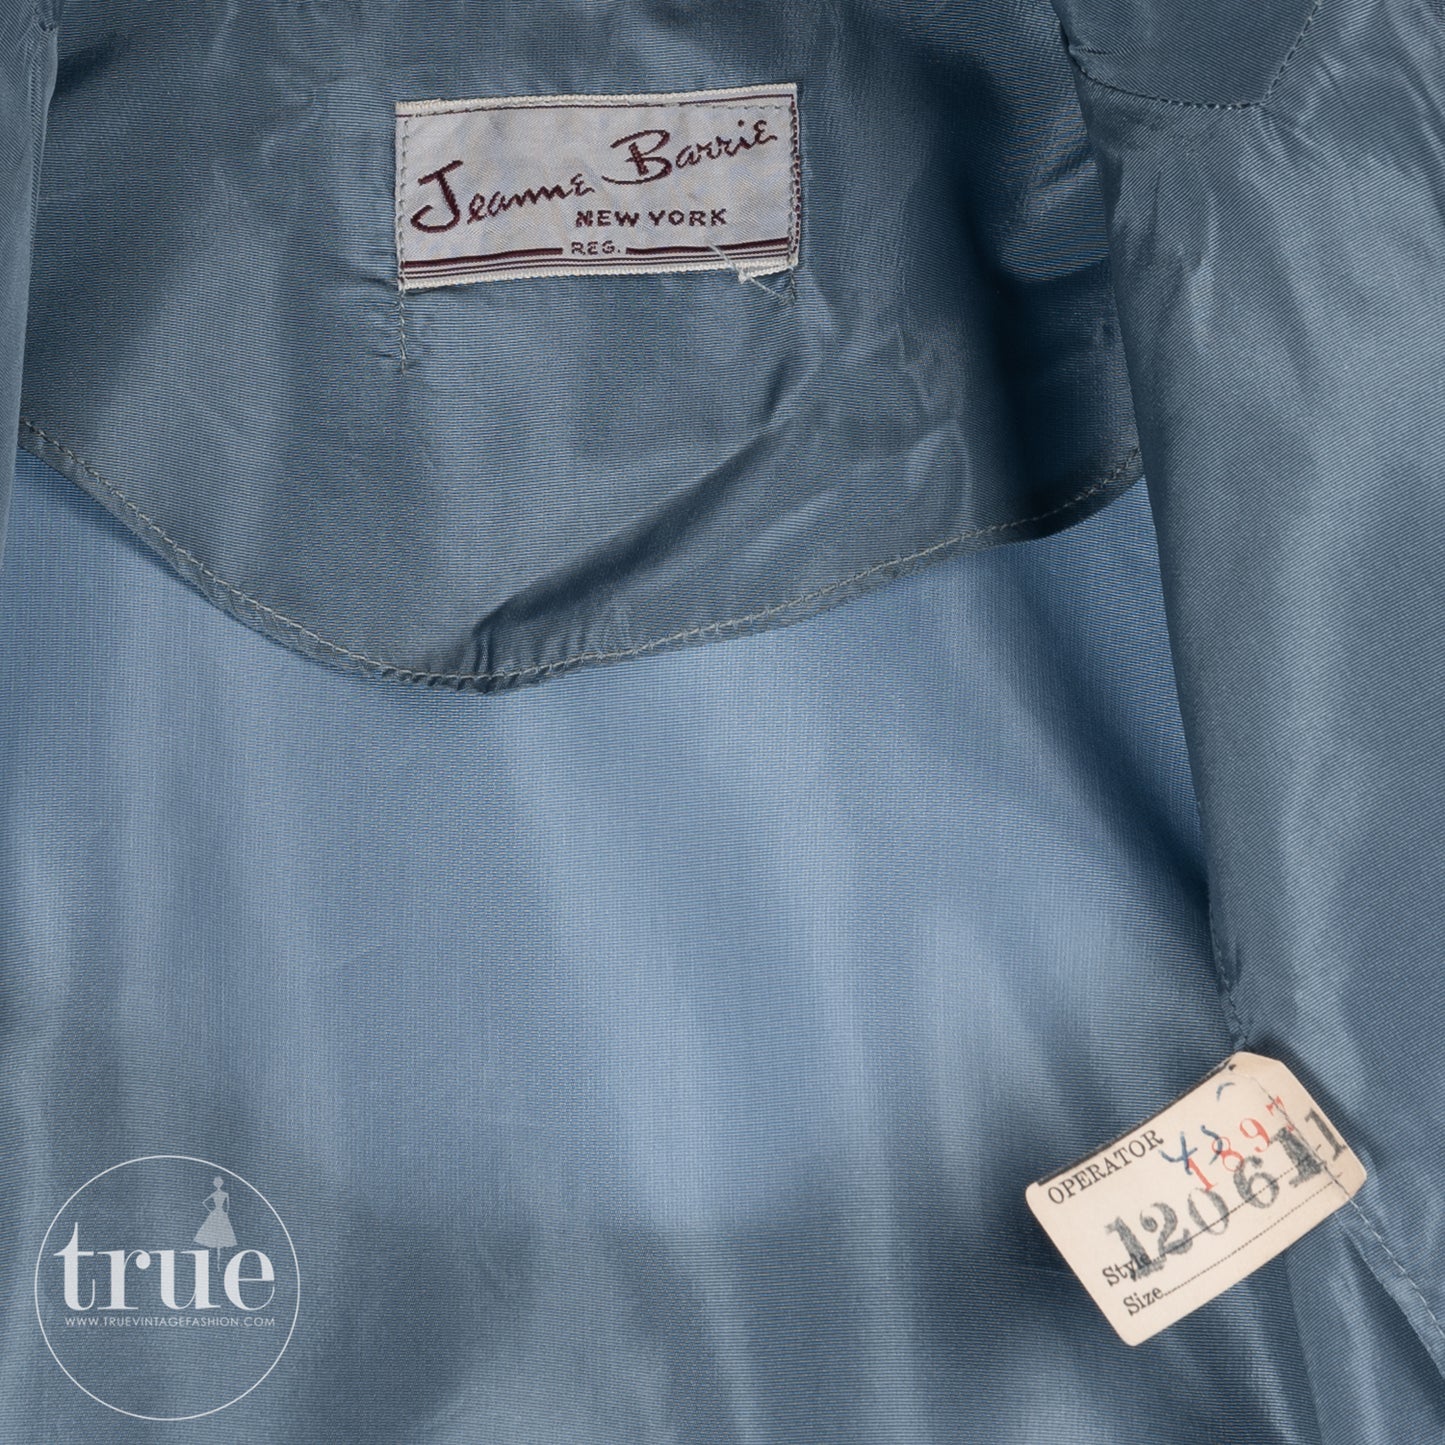 1940's Jeanne Barrie steel blue dress & jacket